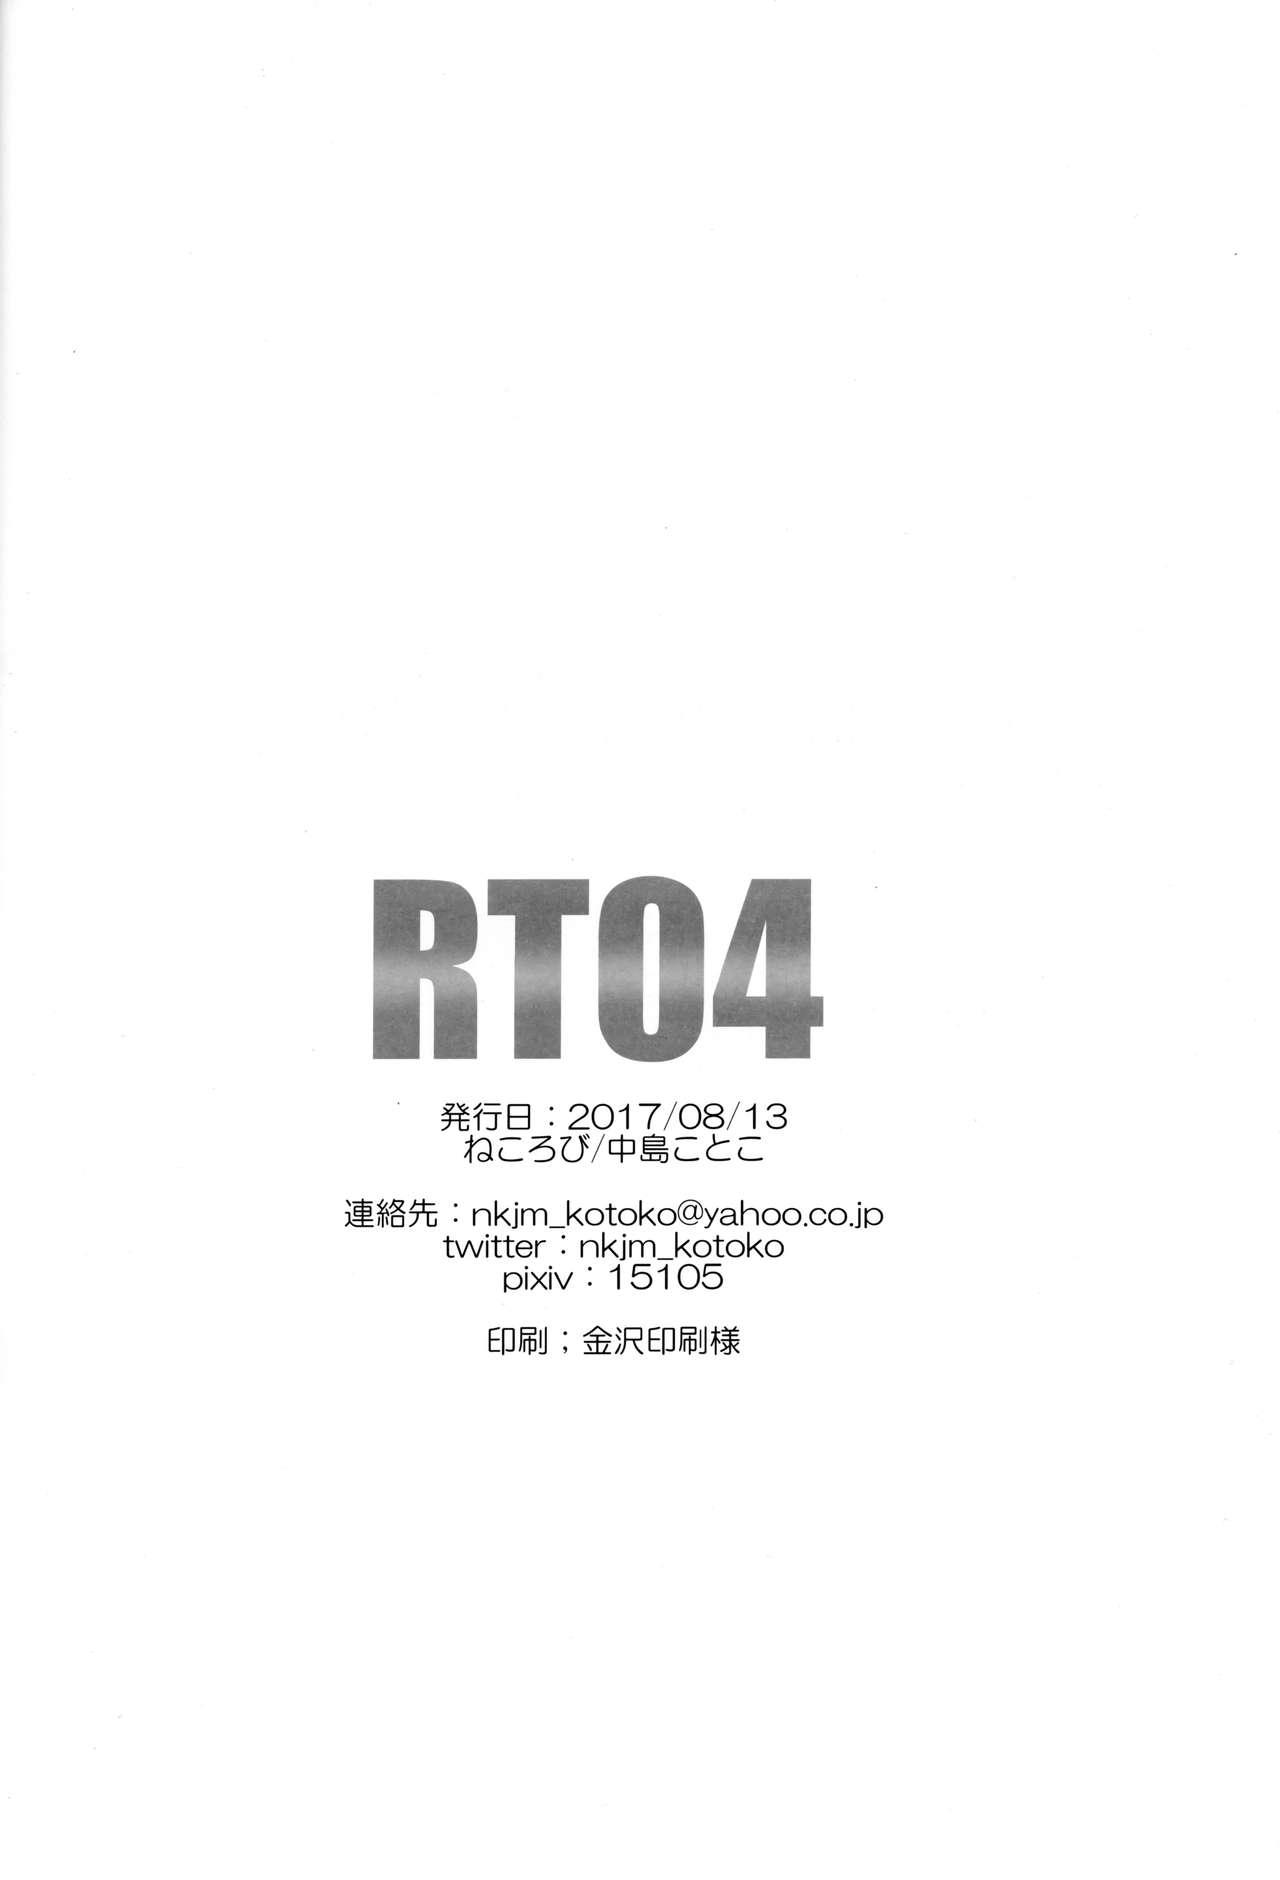 RT04 23